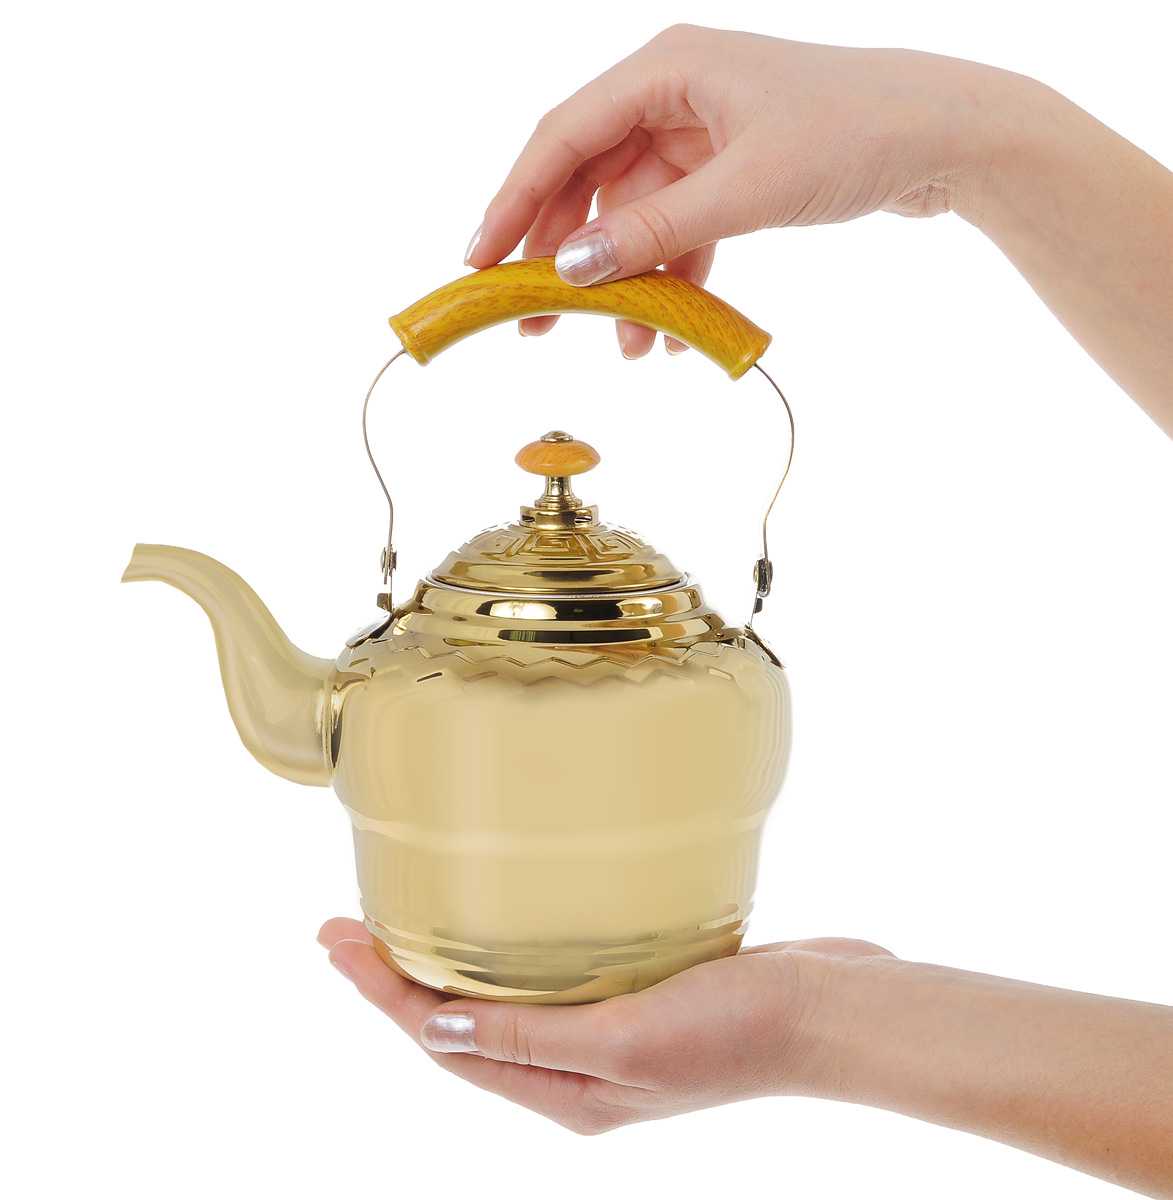 Главный атрибут чаепития: чайник для заваривания